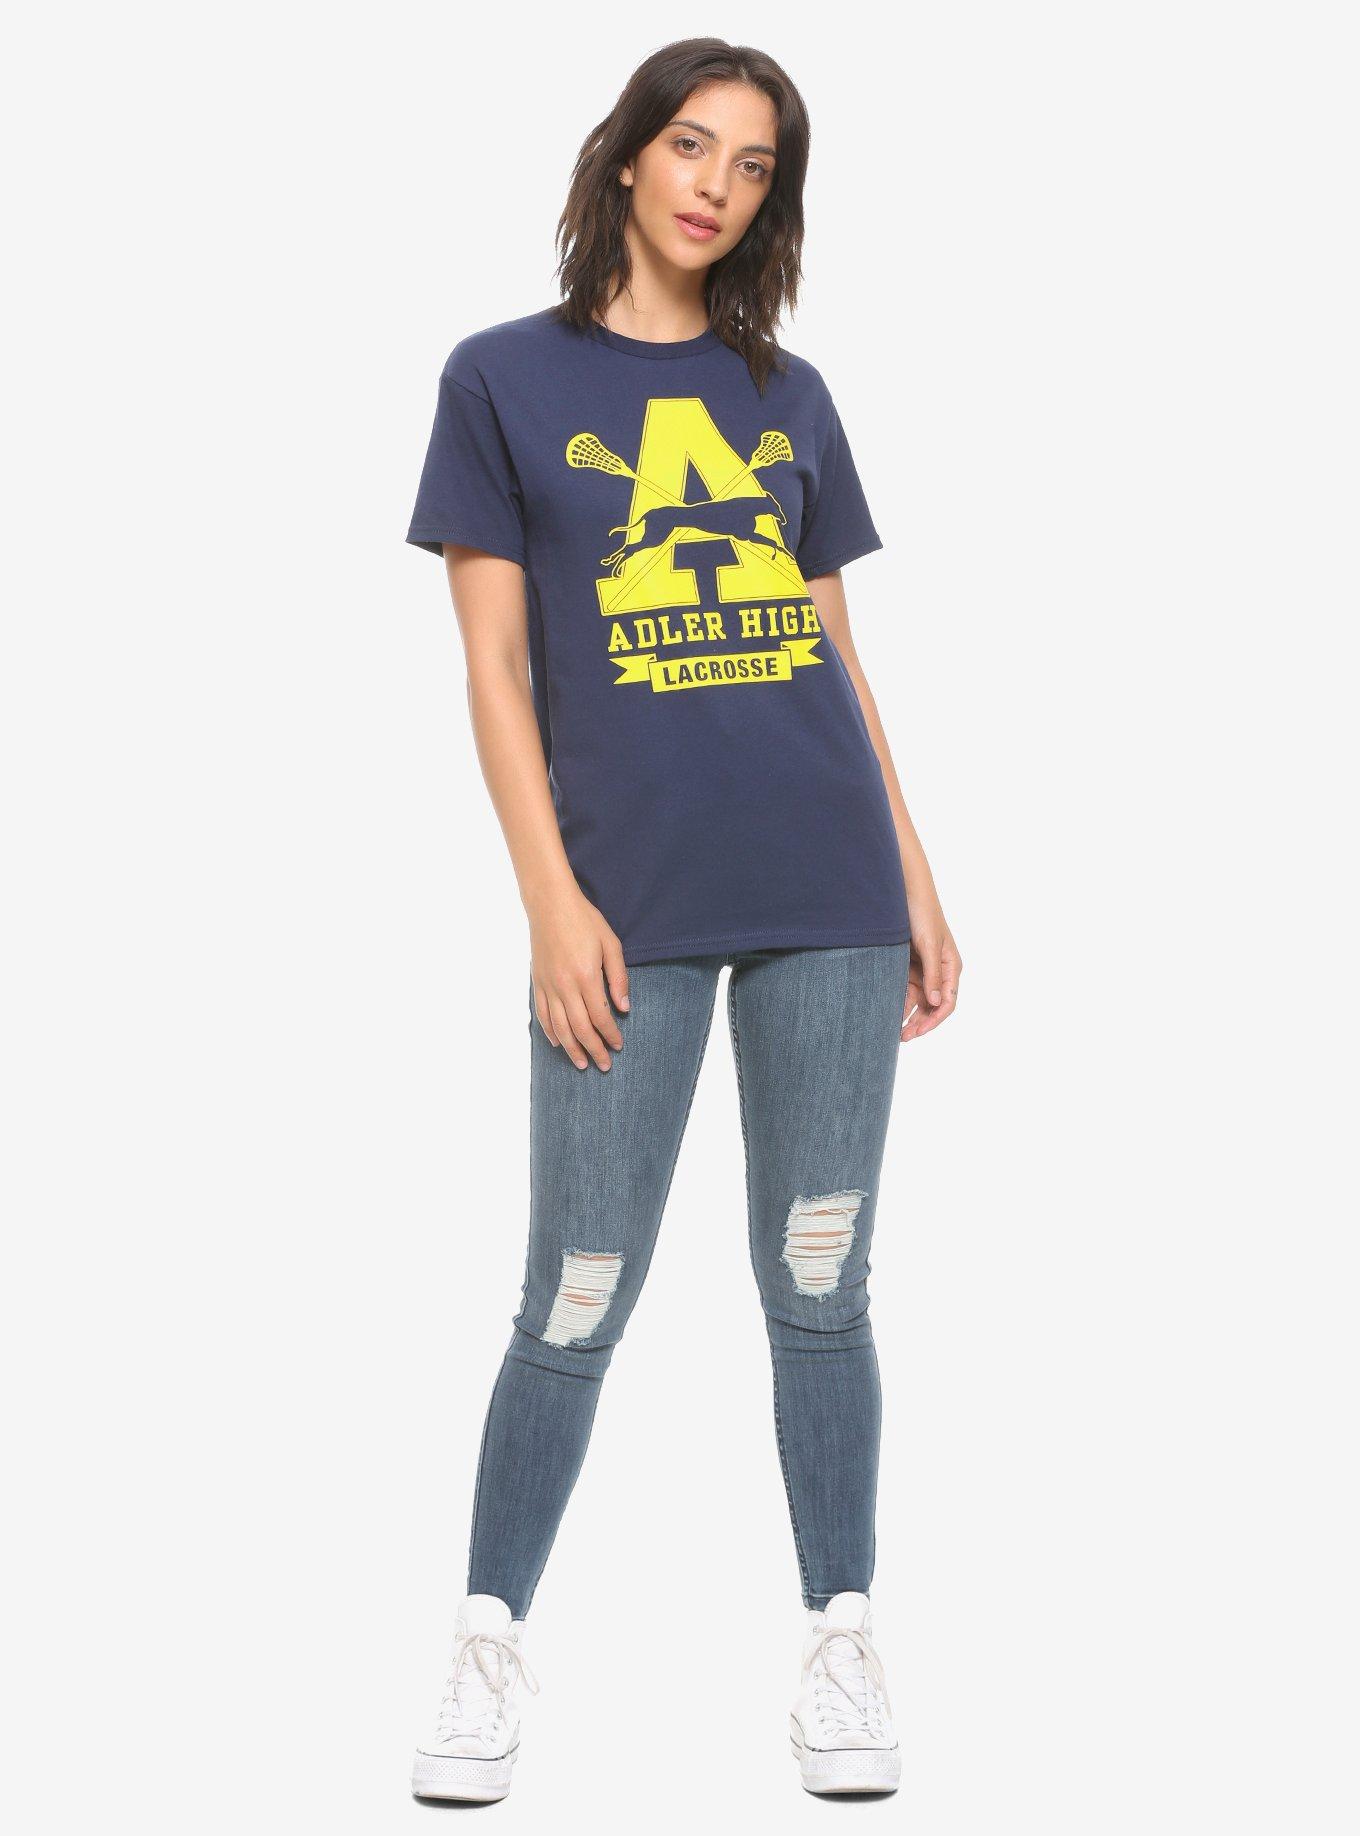 To All The Boys I've Loved Before Adler High Lacrosse Girls T-Shirt, YELLOW, alternate